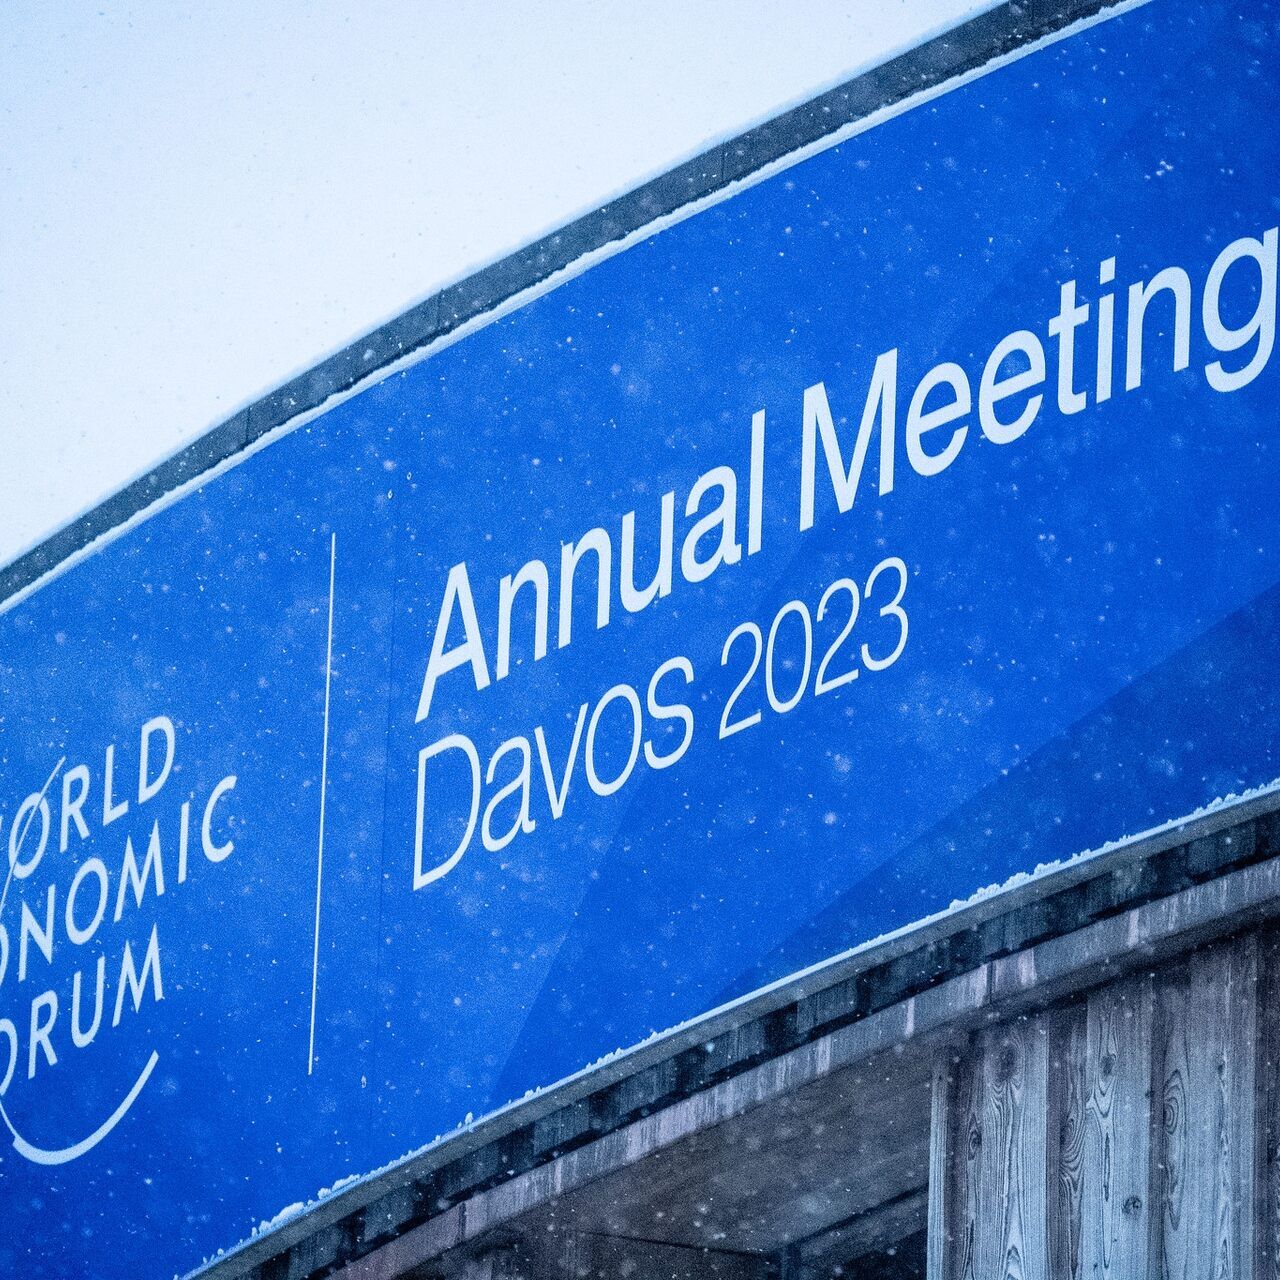 ВЭФ-2023: тысяча девятьсот лидеров мировой экономики, правительства и государственного управления приняли решение принять участие во Всемирном экономическом форуме 2023 года в Давосе.